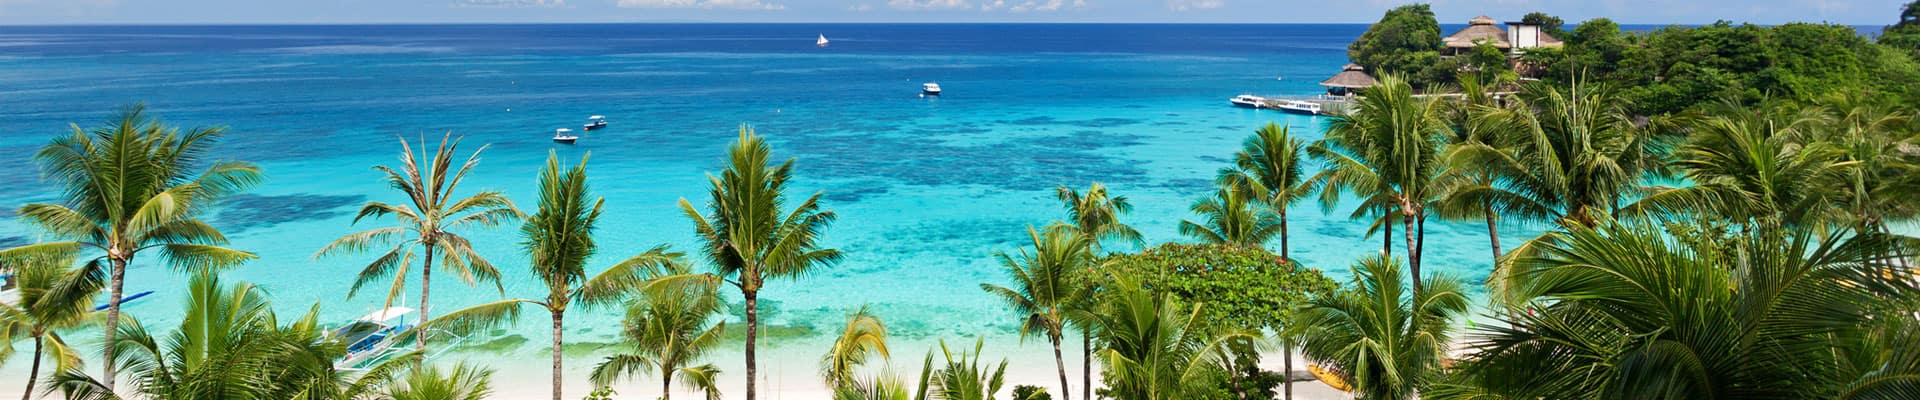 4-day-bahamas-cruises